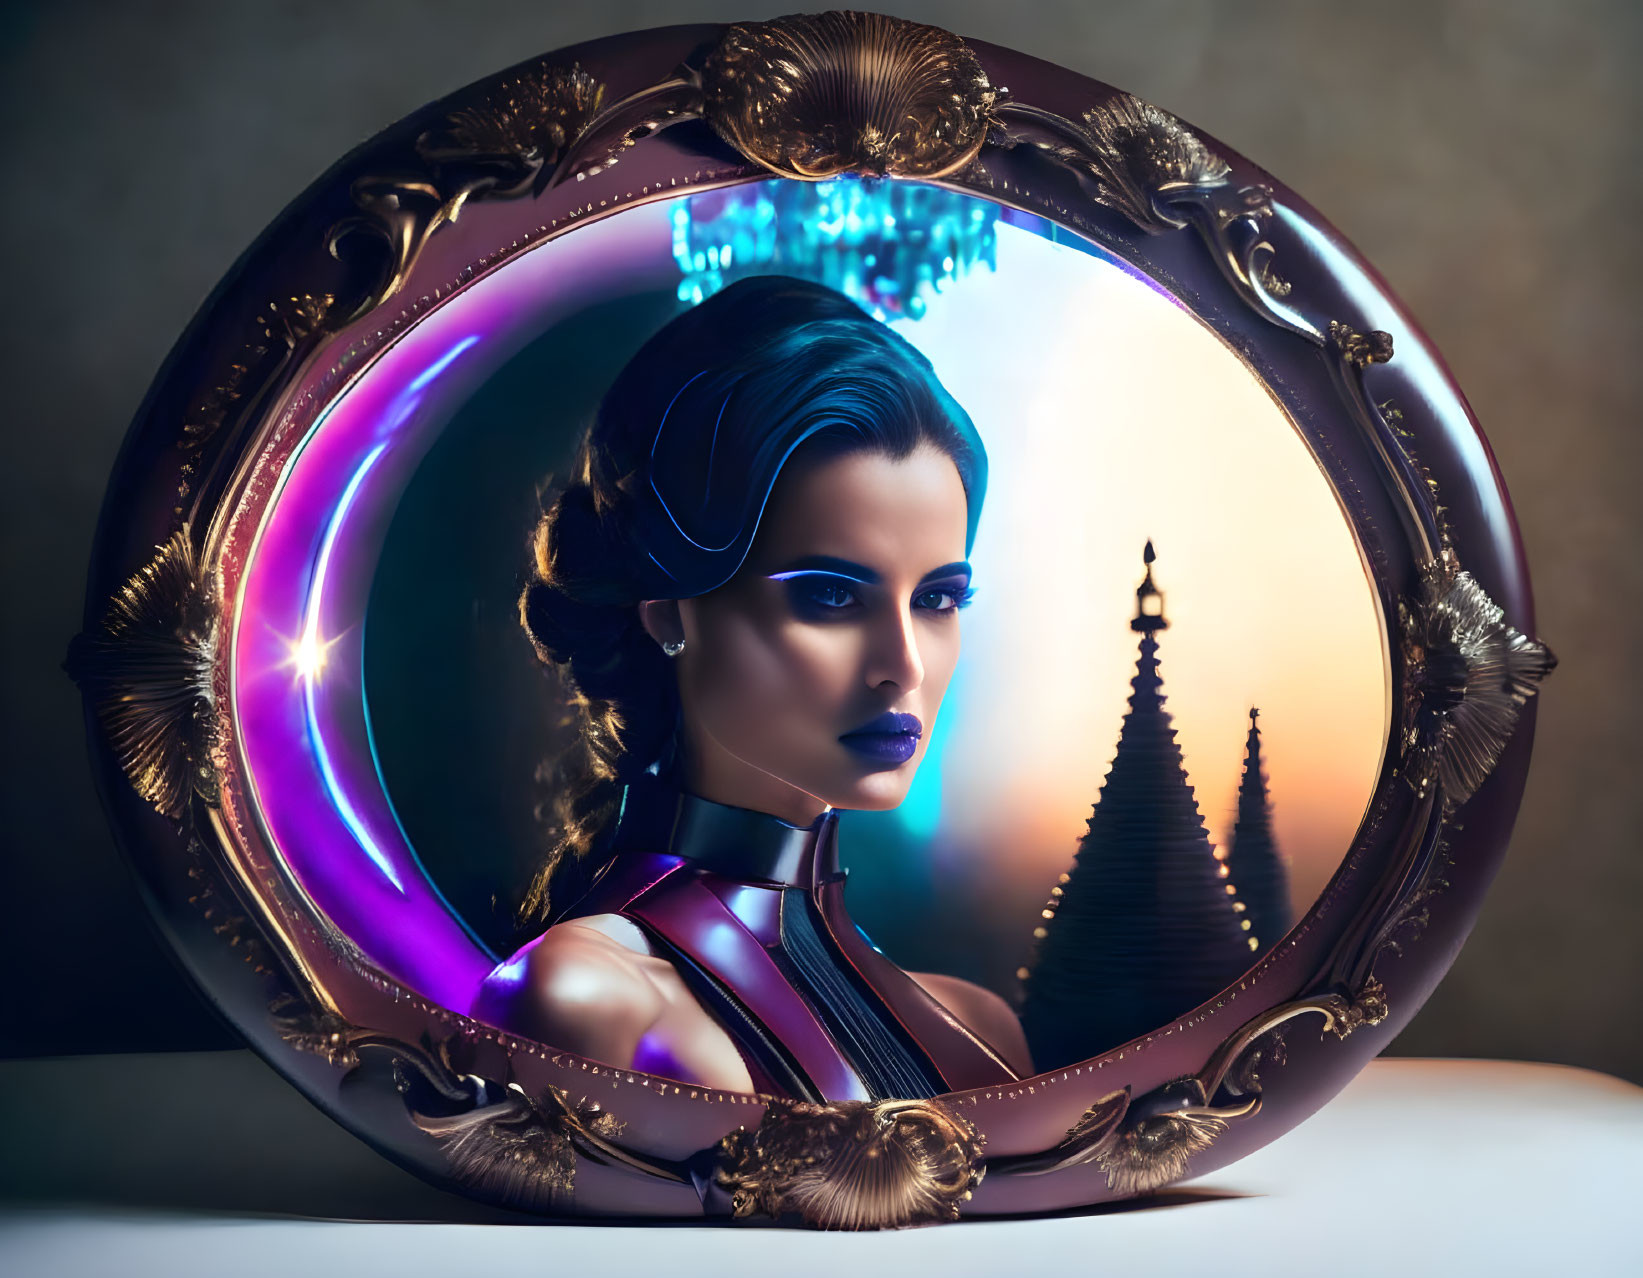 Futuristic woman portrait in ornate oval with fantasy landscape